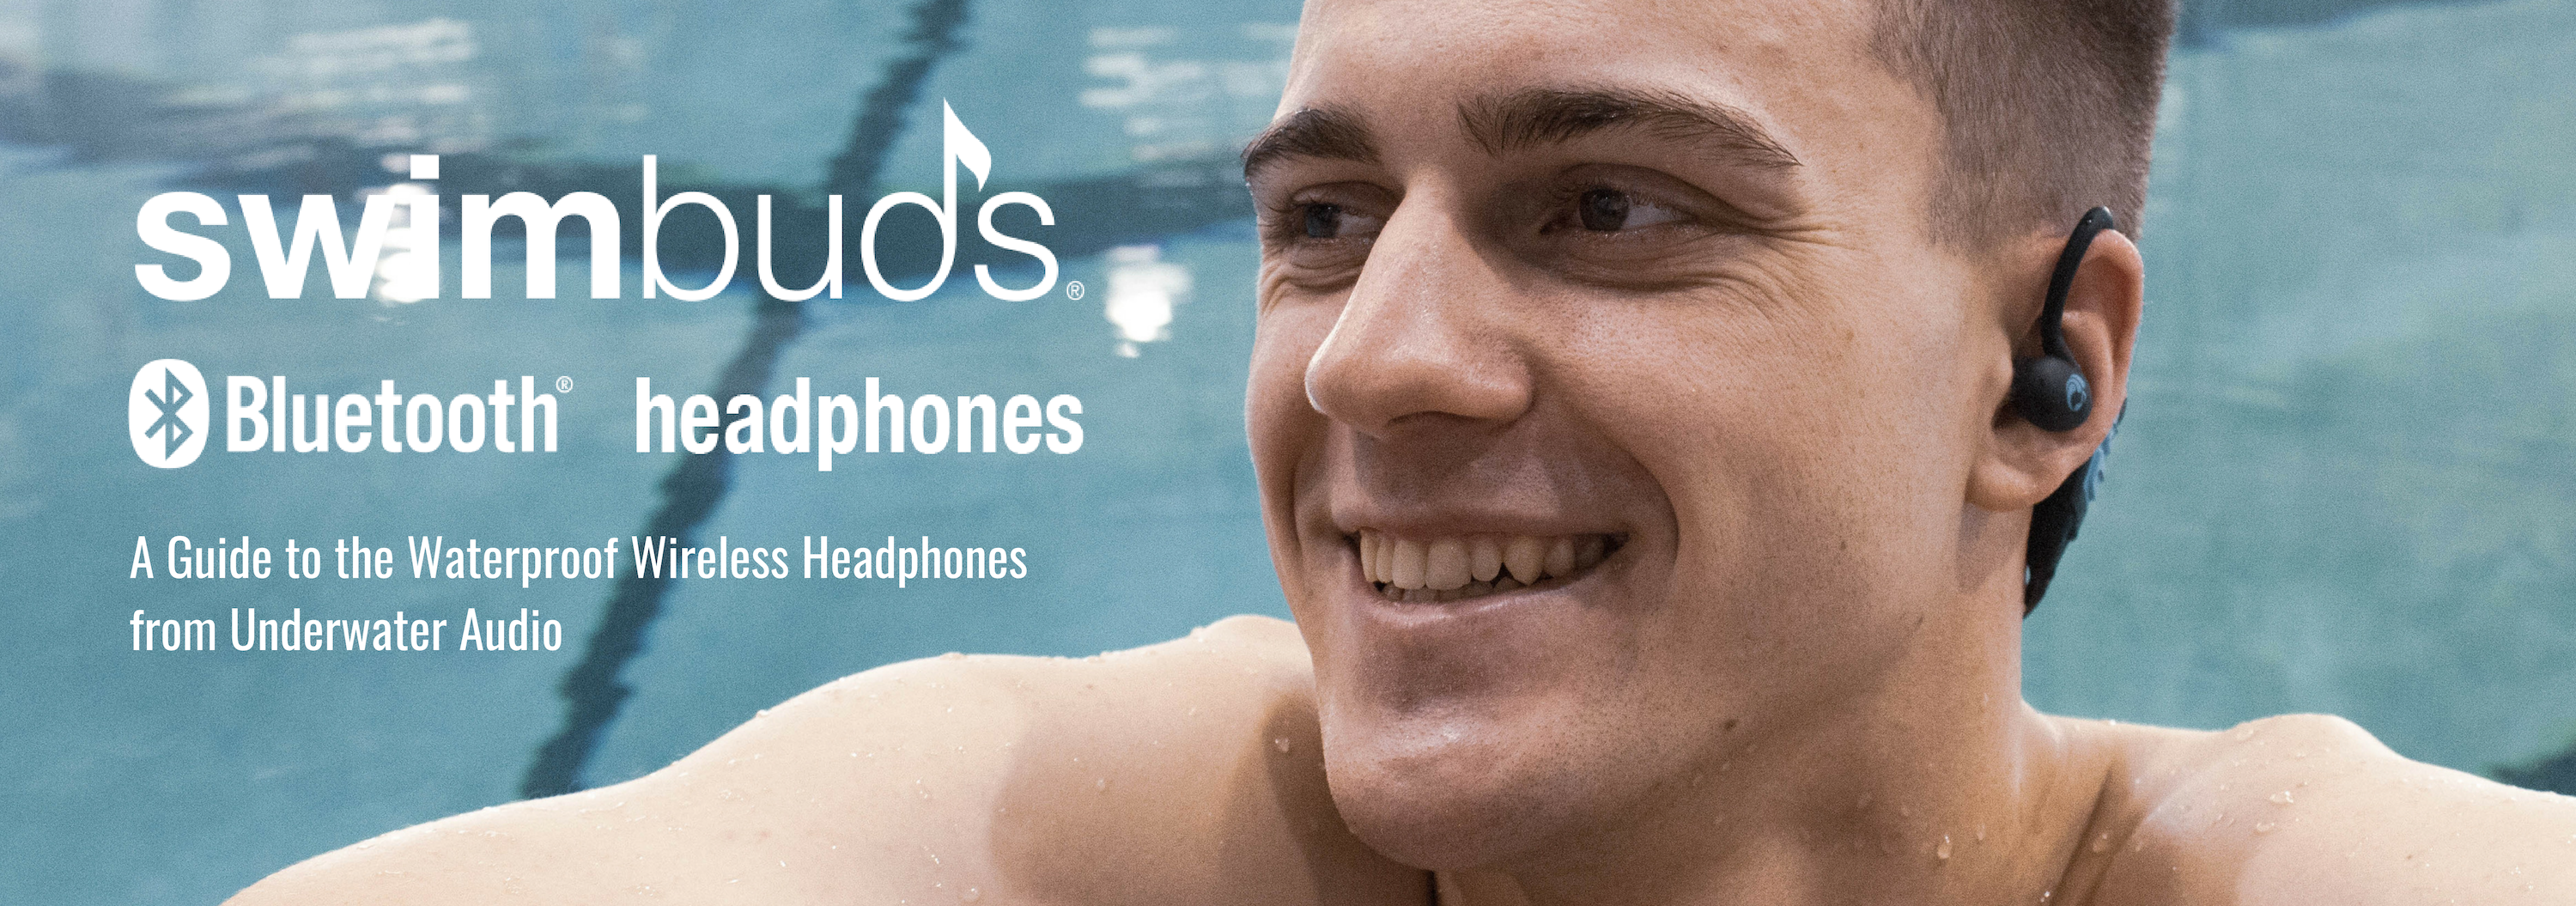 A Guide to Swimbuds Bluetooth Headphones